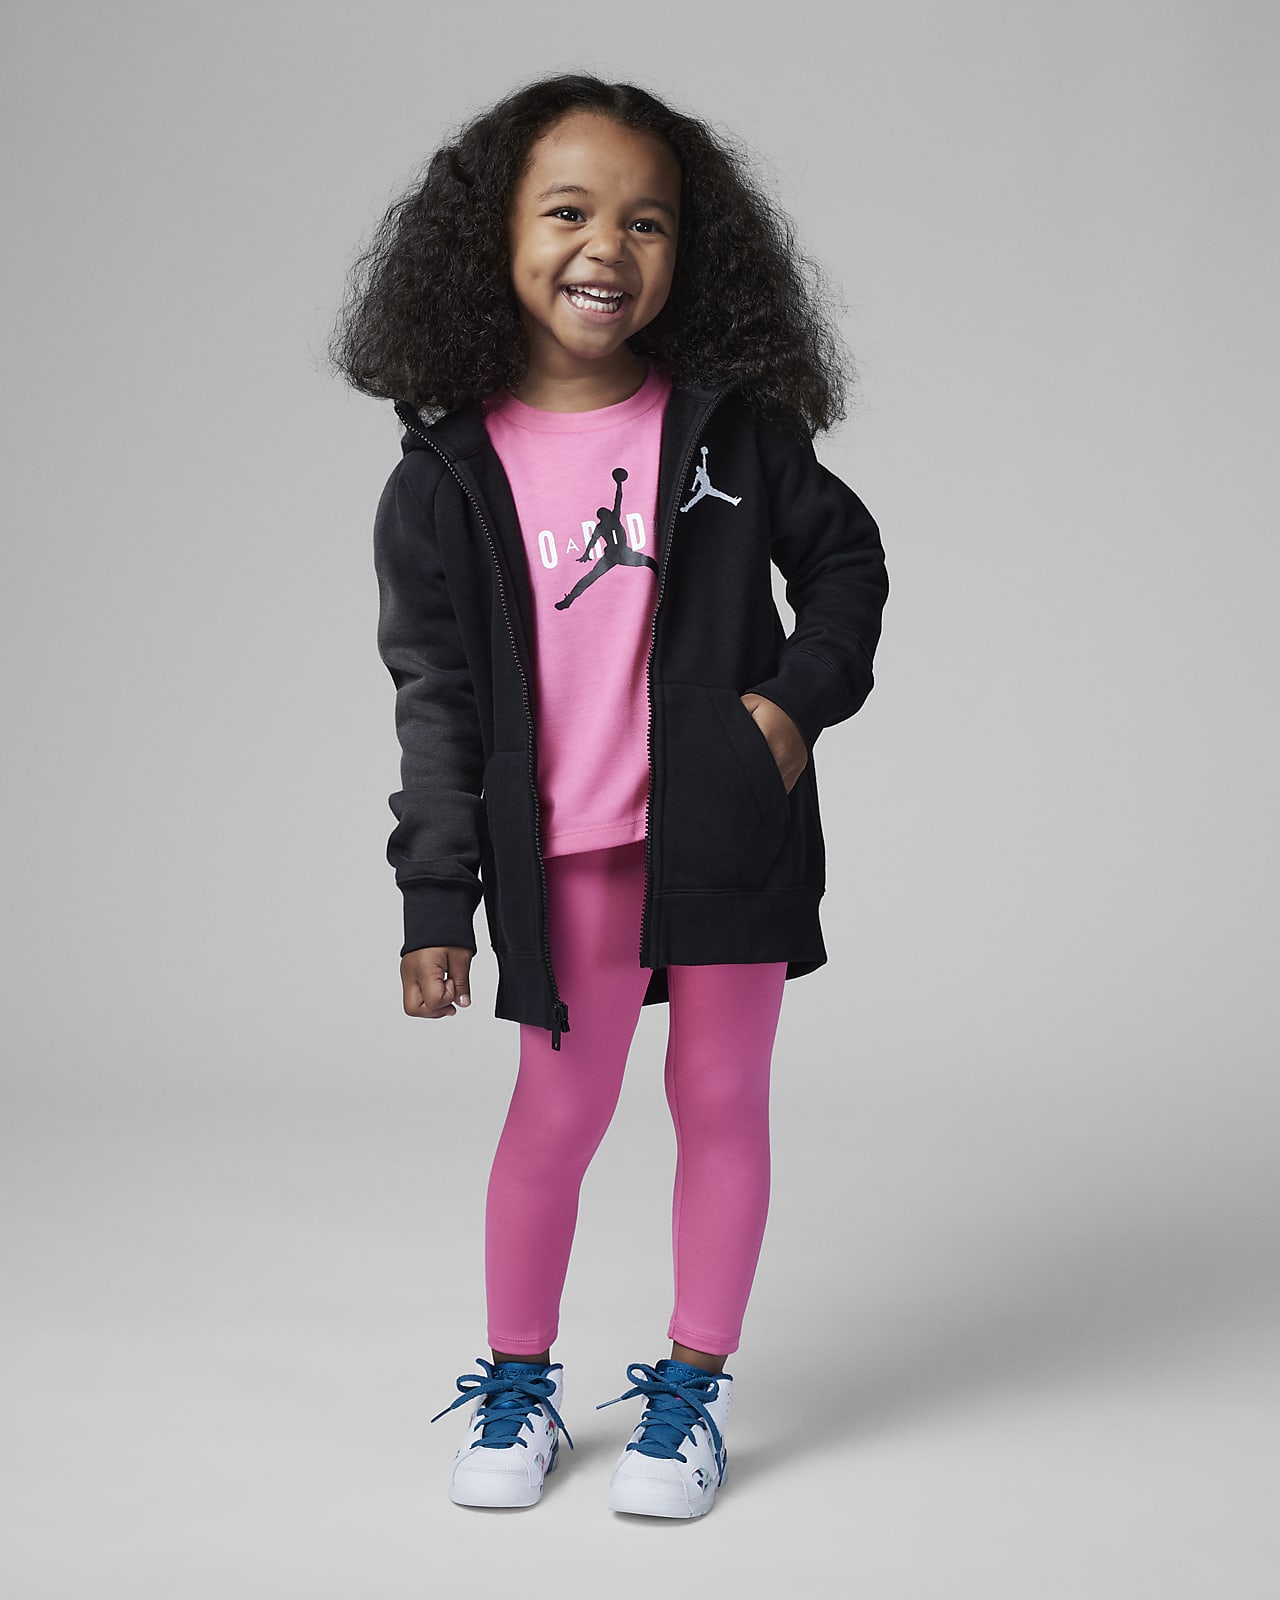 Jordan Toddler Girls' Jersey Dress - Pink, Size: 2T, Polyester